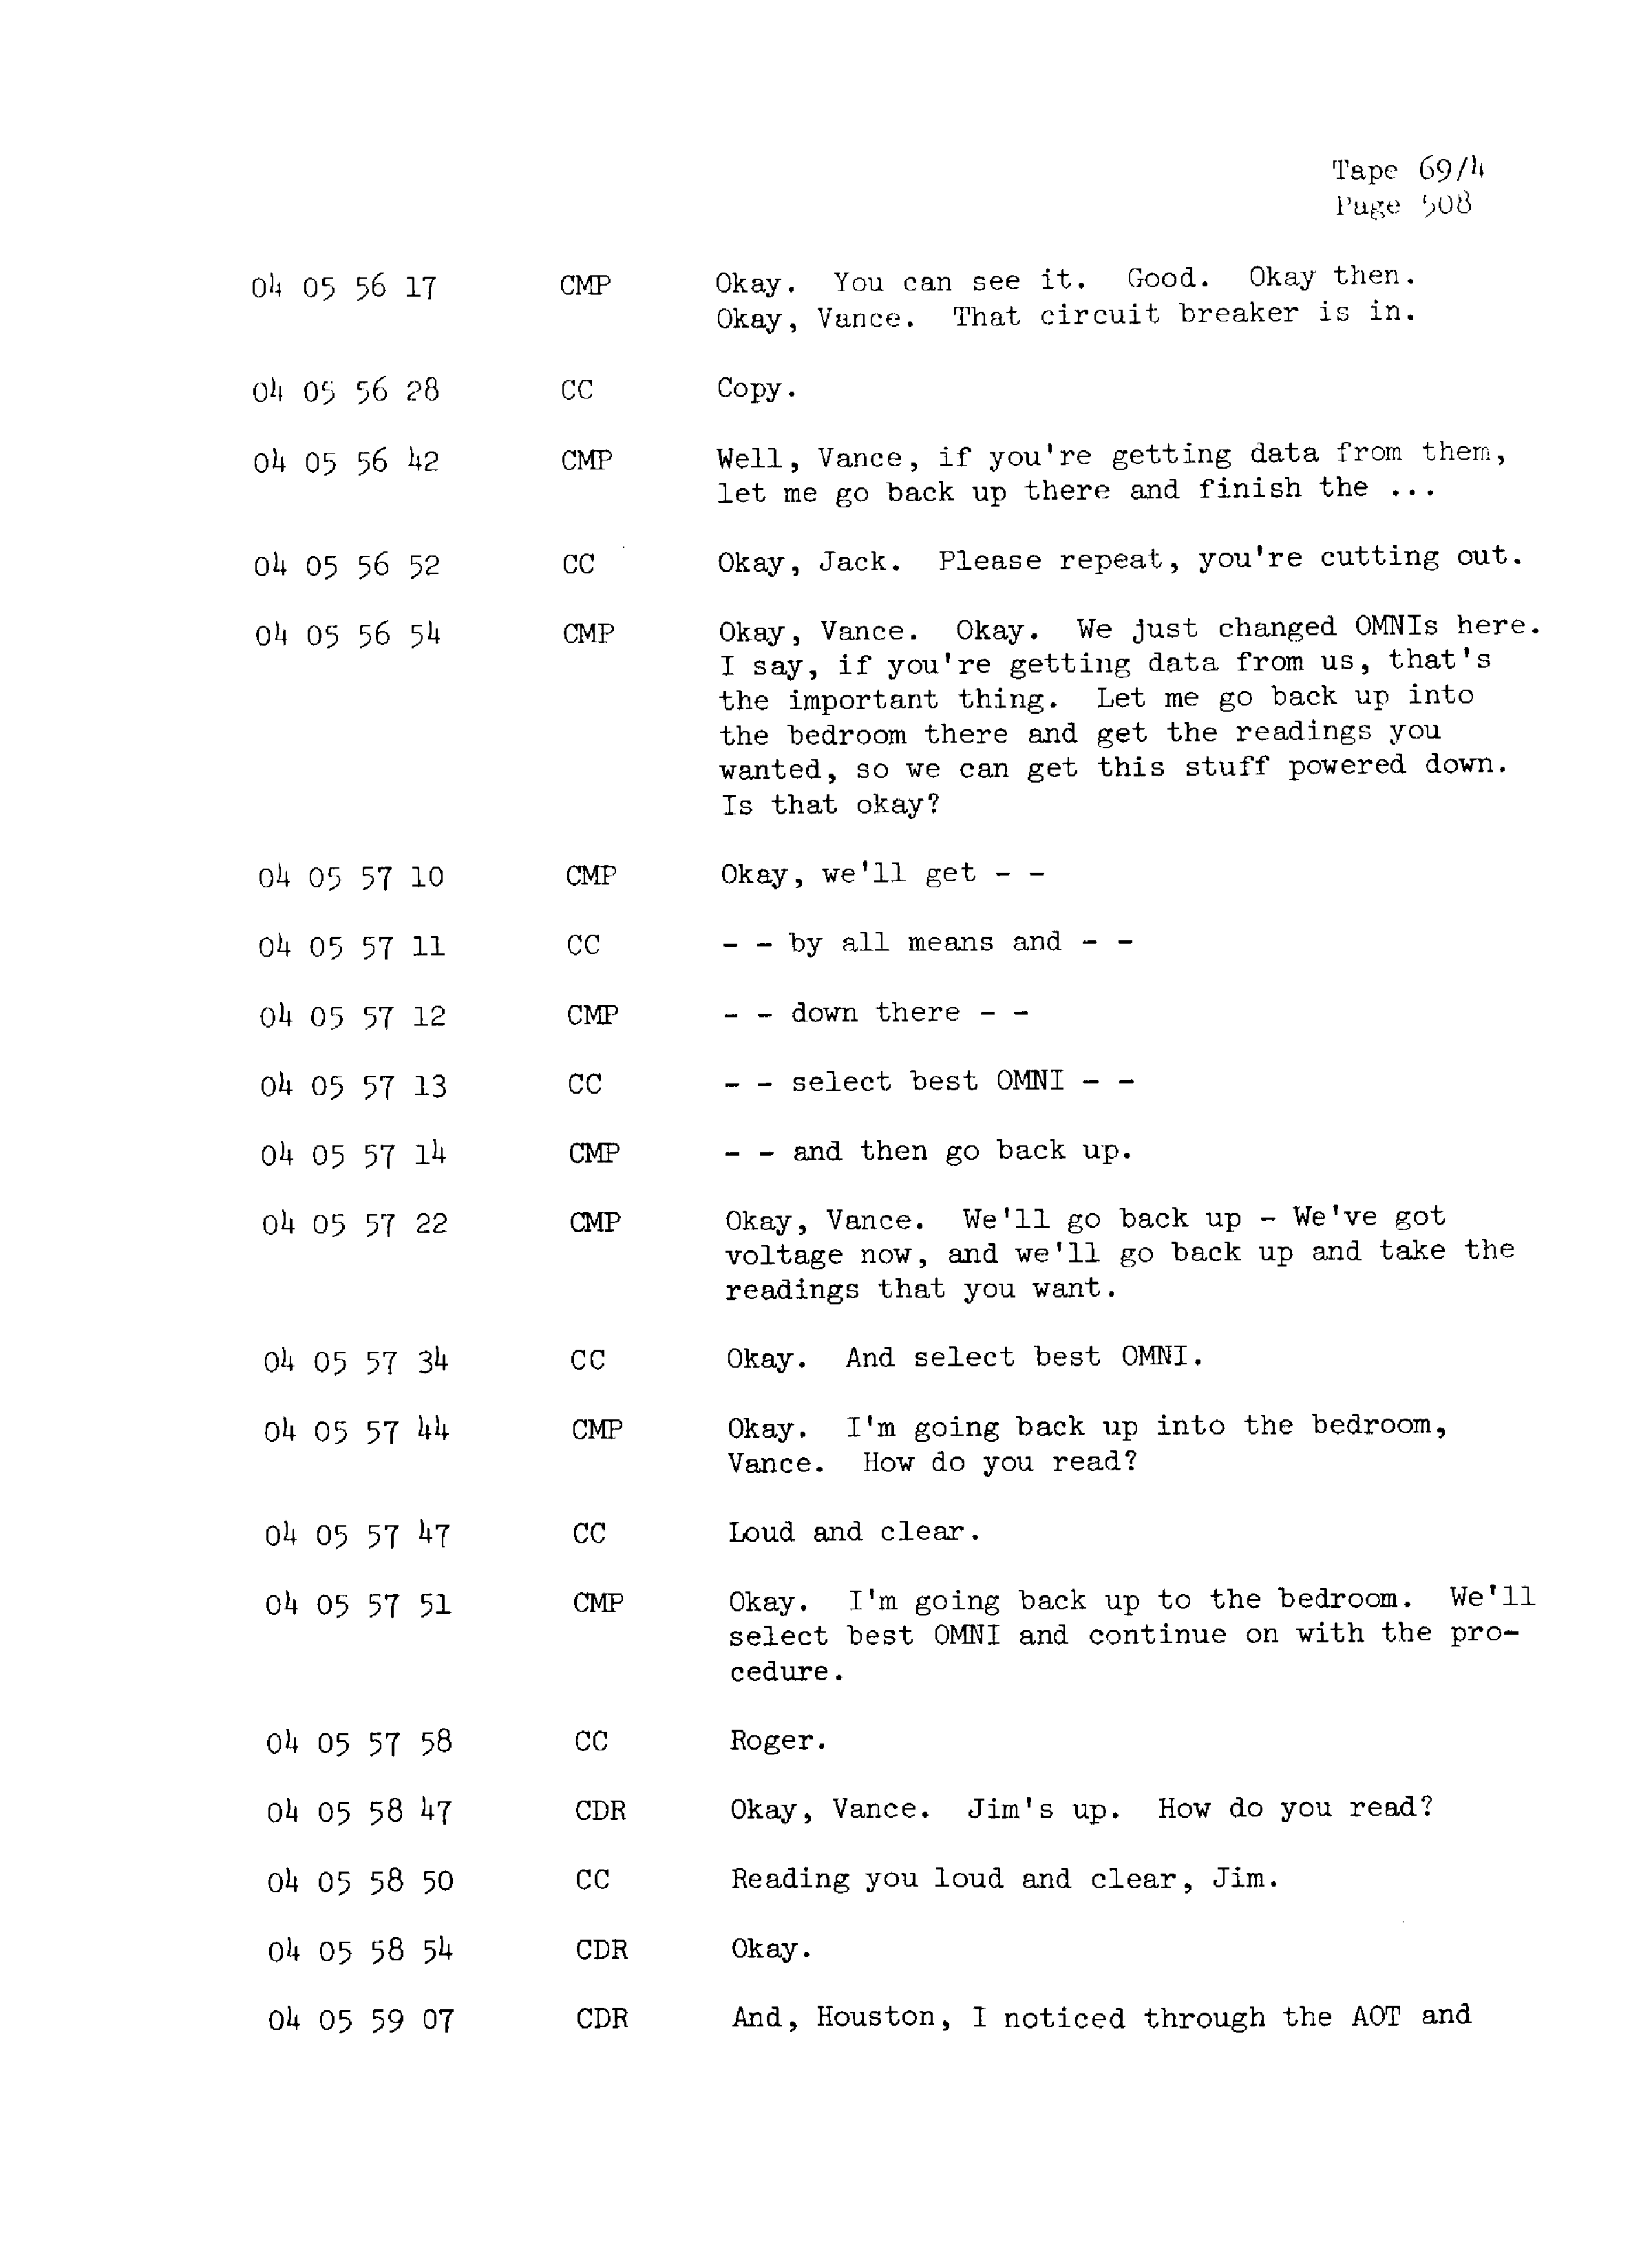 Page 515 of Apollo 13’s original transcript